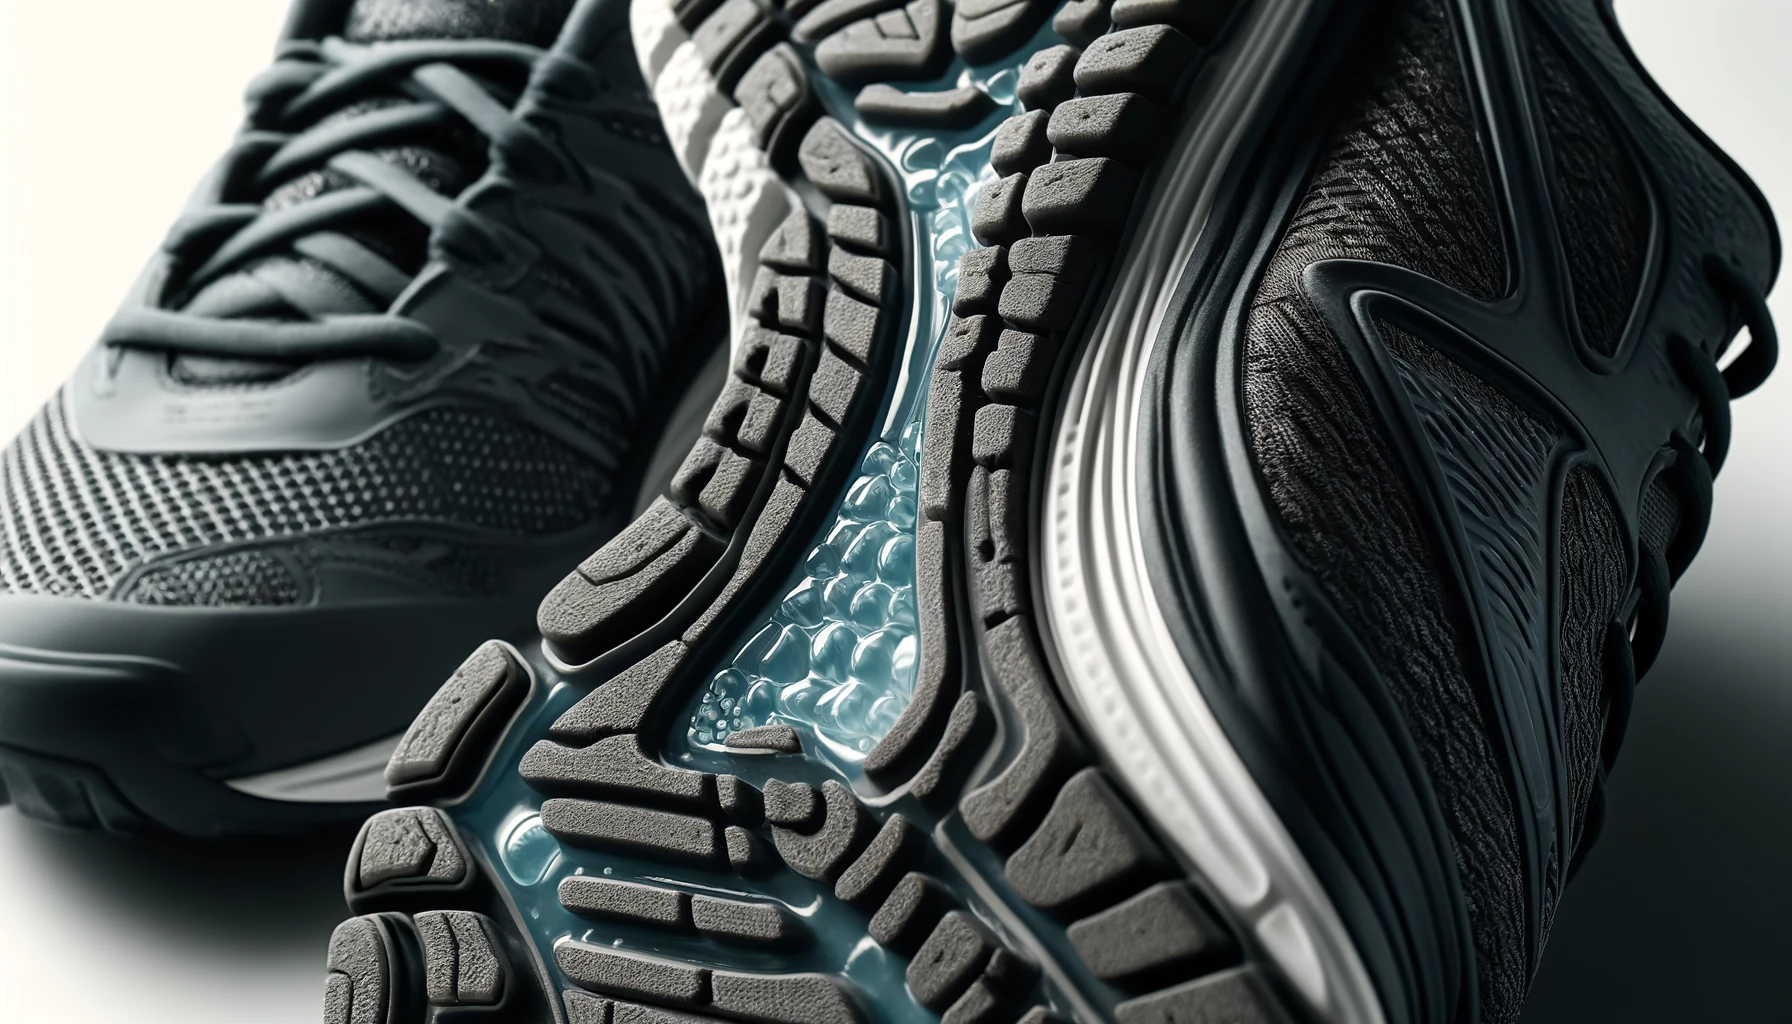 Gros plan sur des chaussures de sport avec des semelles en gel, mettant en lumière leur texture et leur capacité d'absorption des chocs.